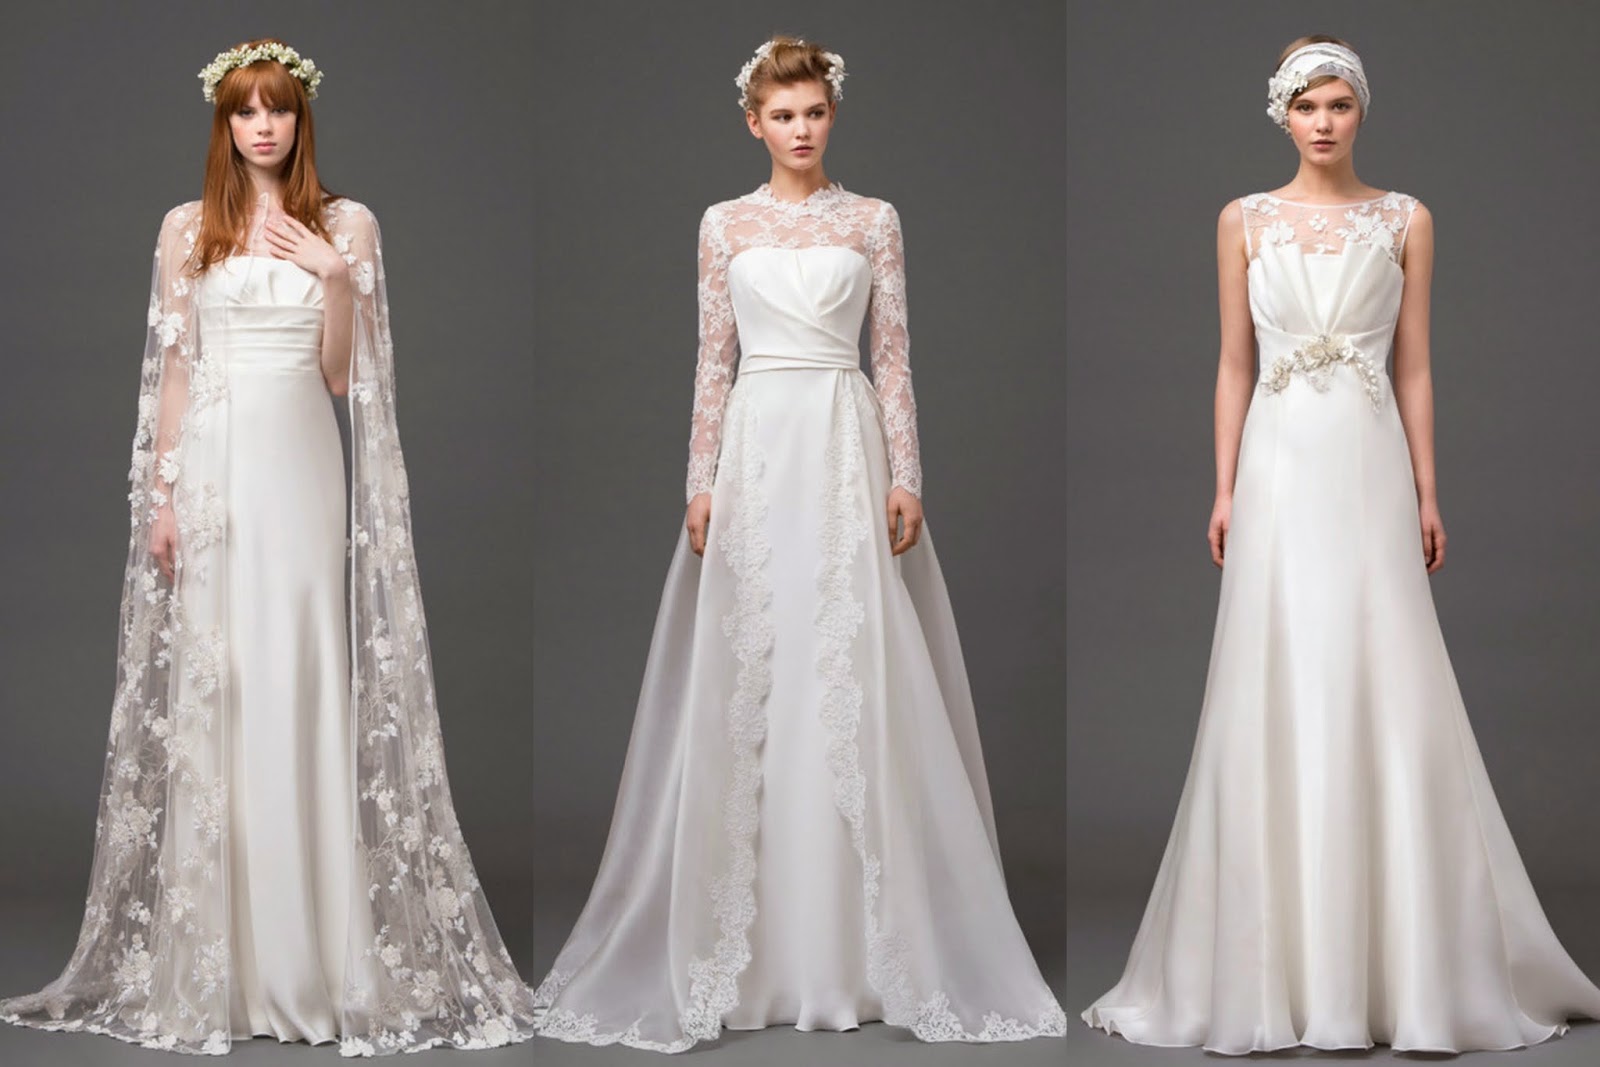 Alberta Feretti Spring 2015 Bridal Collection